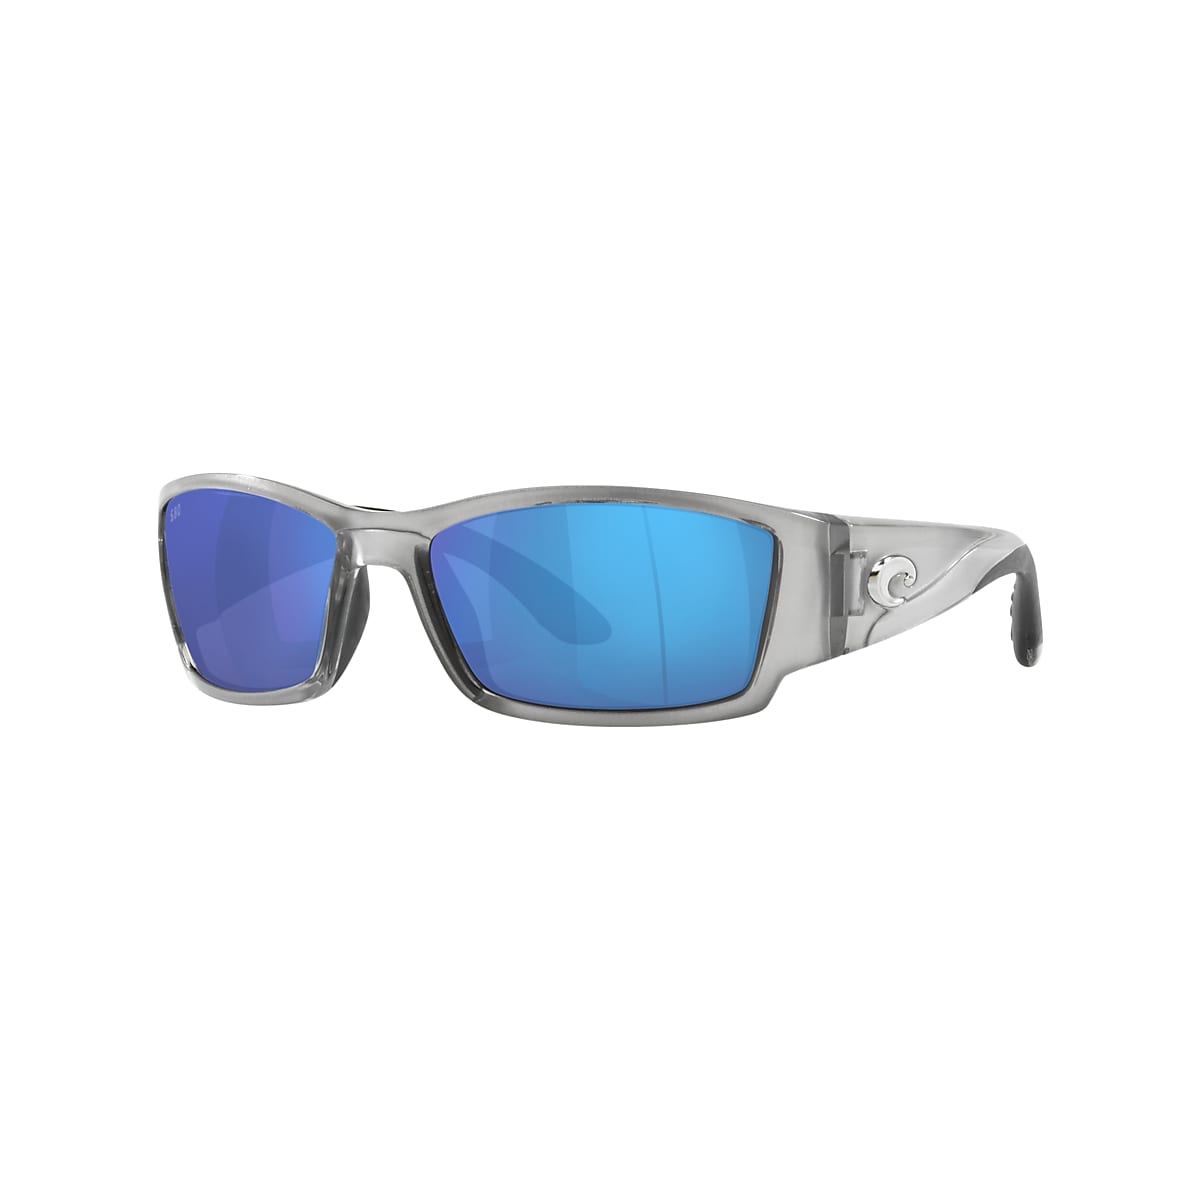 Costa Corbina Men's Sunglasses in Silver